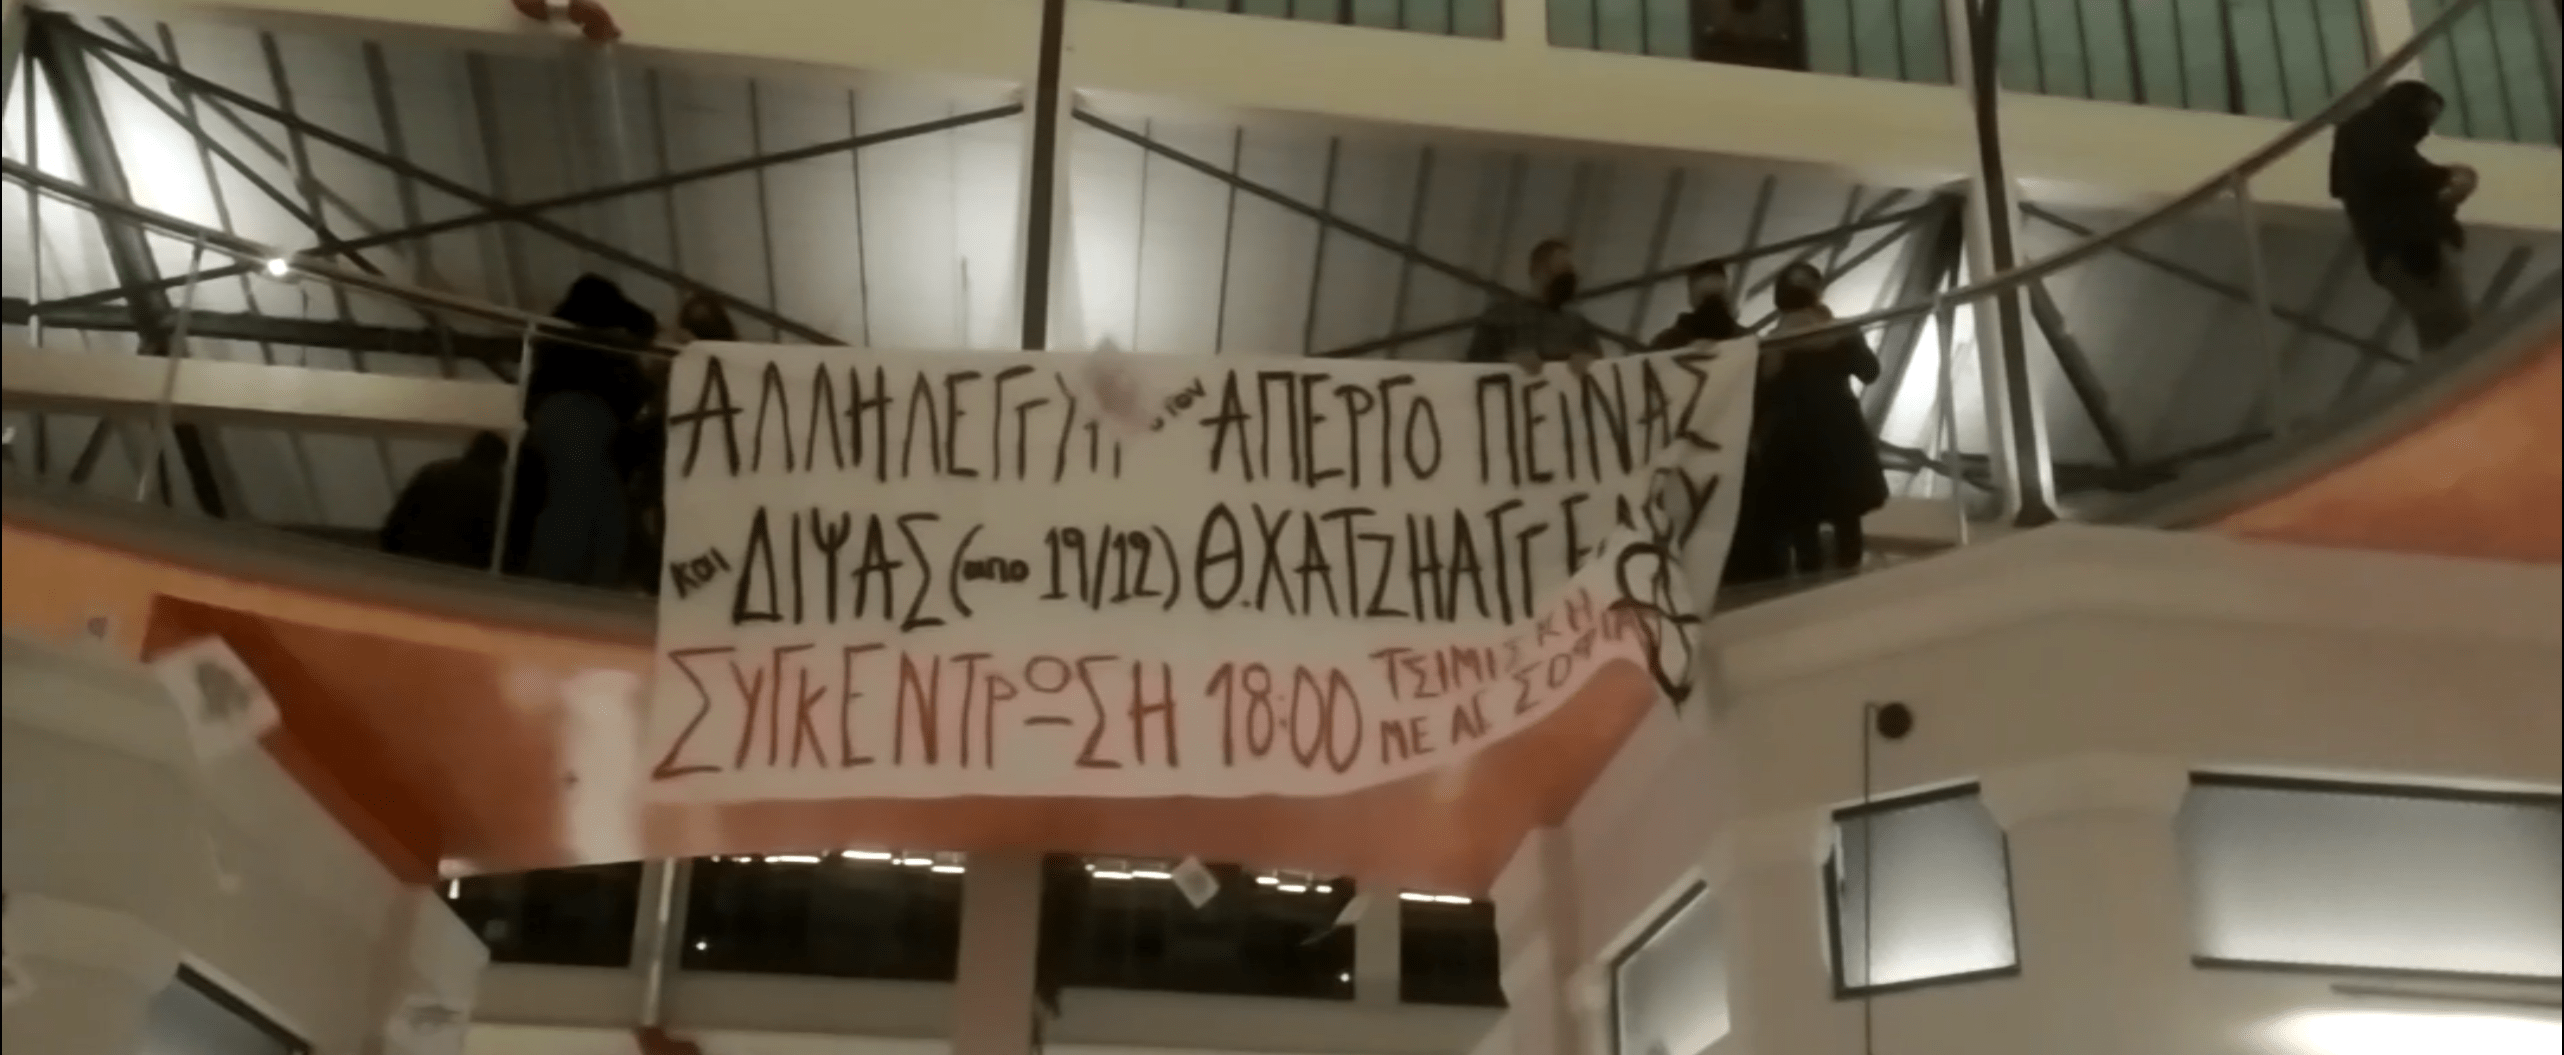 Παρέμβαση με πανό-τρικάκια-συνθήματα στην Αγορά Μοδιάνο σε ένδειξη αλληλεγγύης στον απεργό πείνας & δίψας Θ.Χατζηαγγέλου [Video]